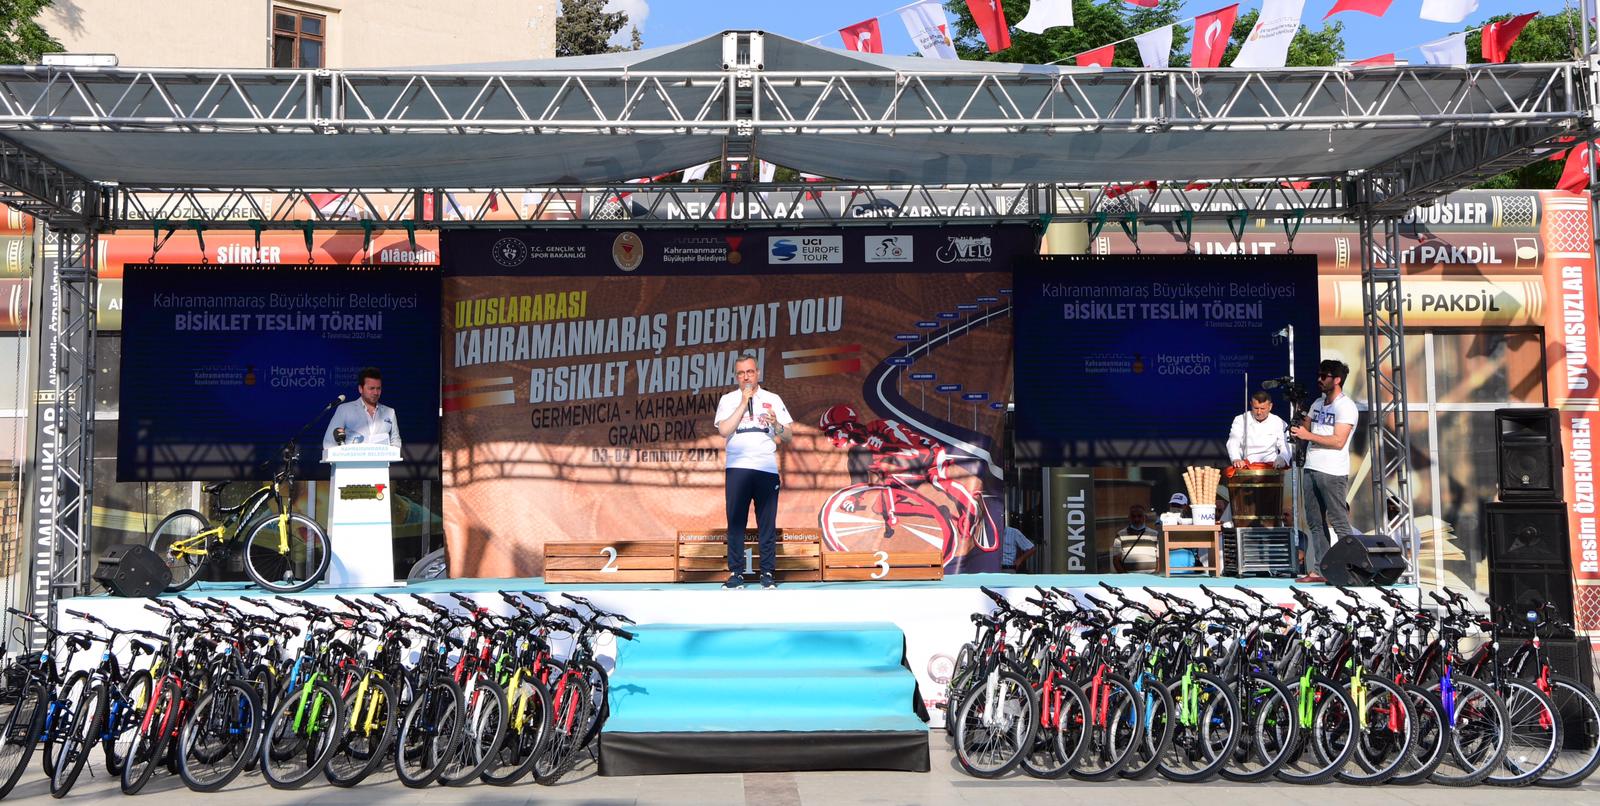  Kahramanmaraş’ta Uluslararası Edebiyat Yolu Bisiklet Yarışı’nda Gençlere Bisiklet Hediye Edildi